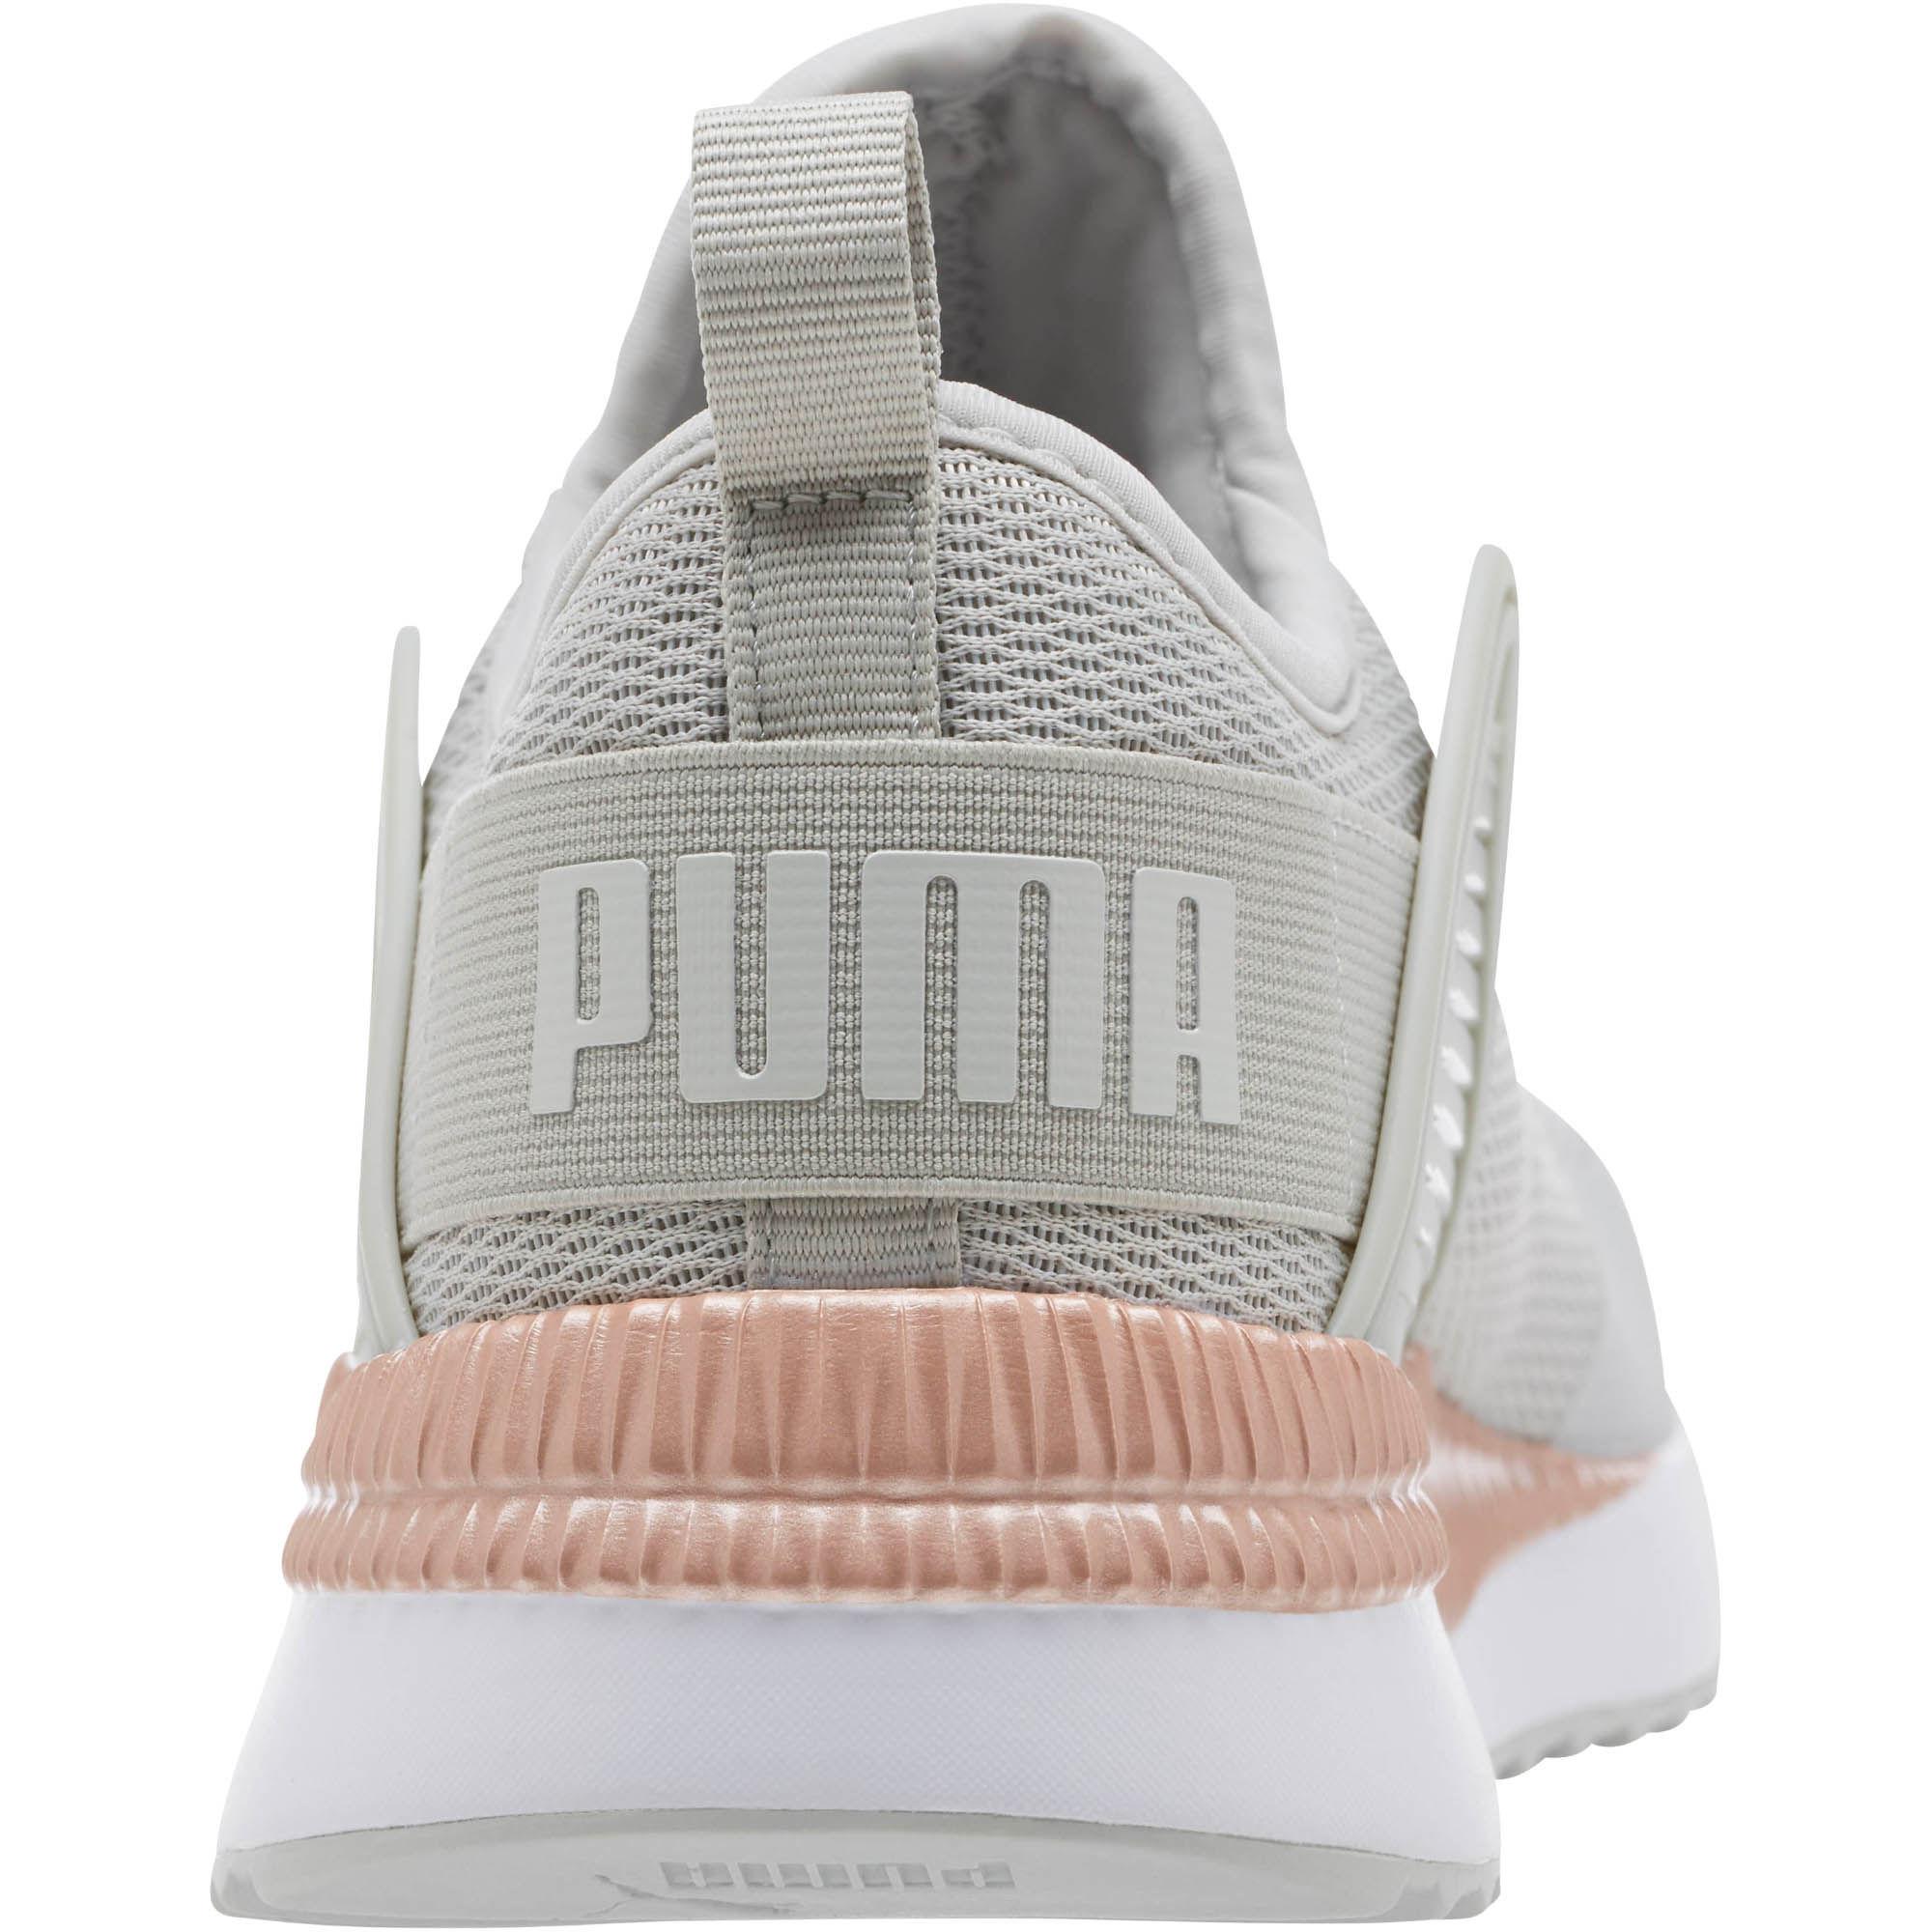 puma women's next cage metallic speckle shoes